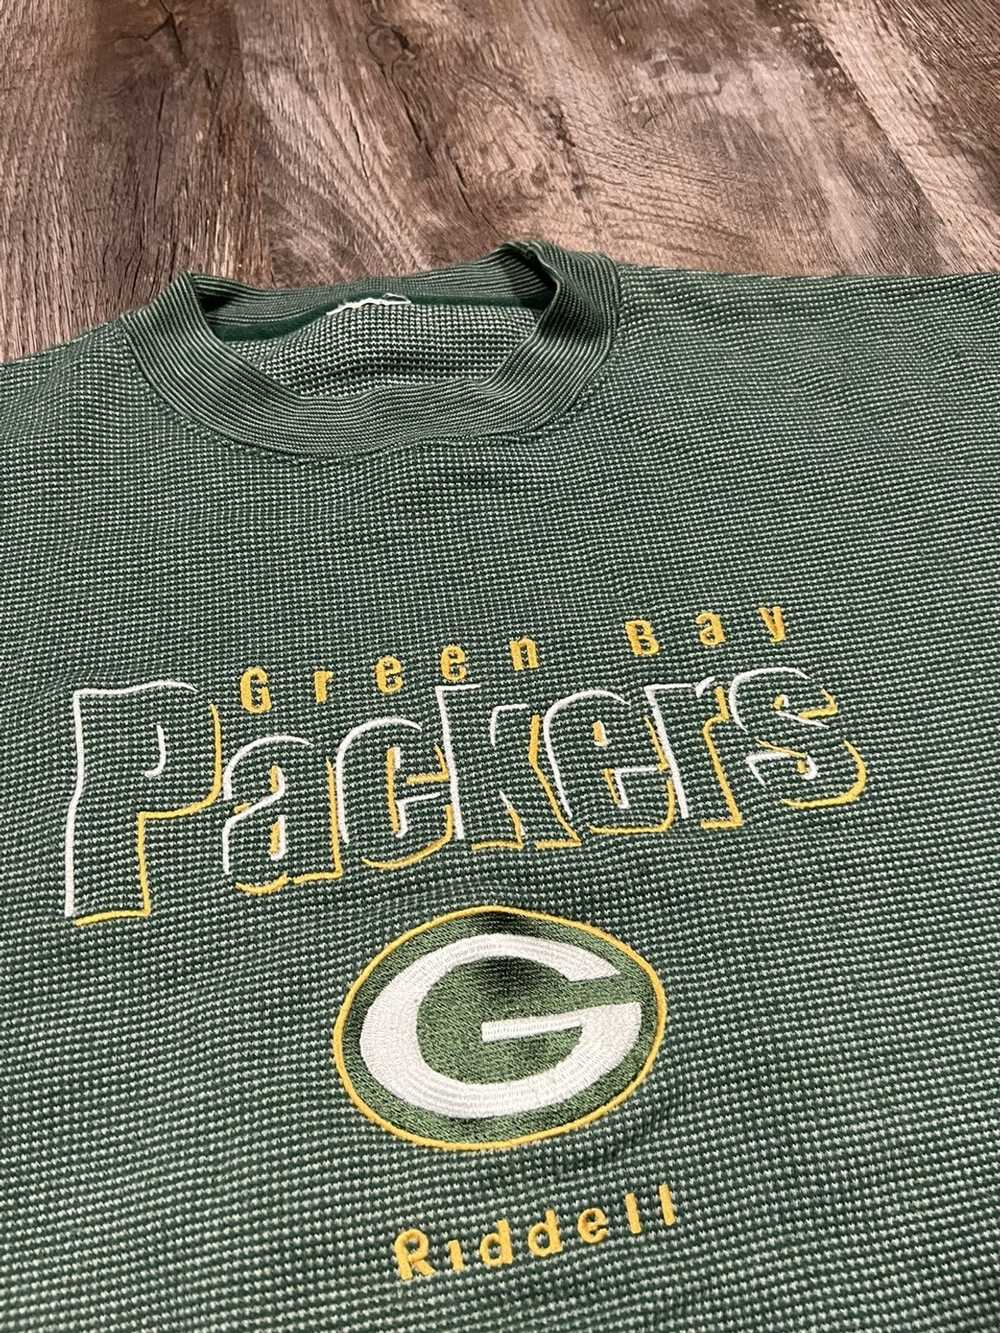 Vintage Vintage Green Bay Packers Sweatshirt - image 8